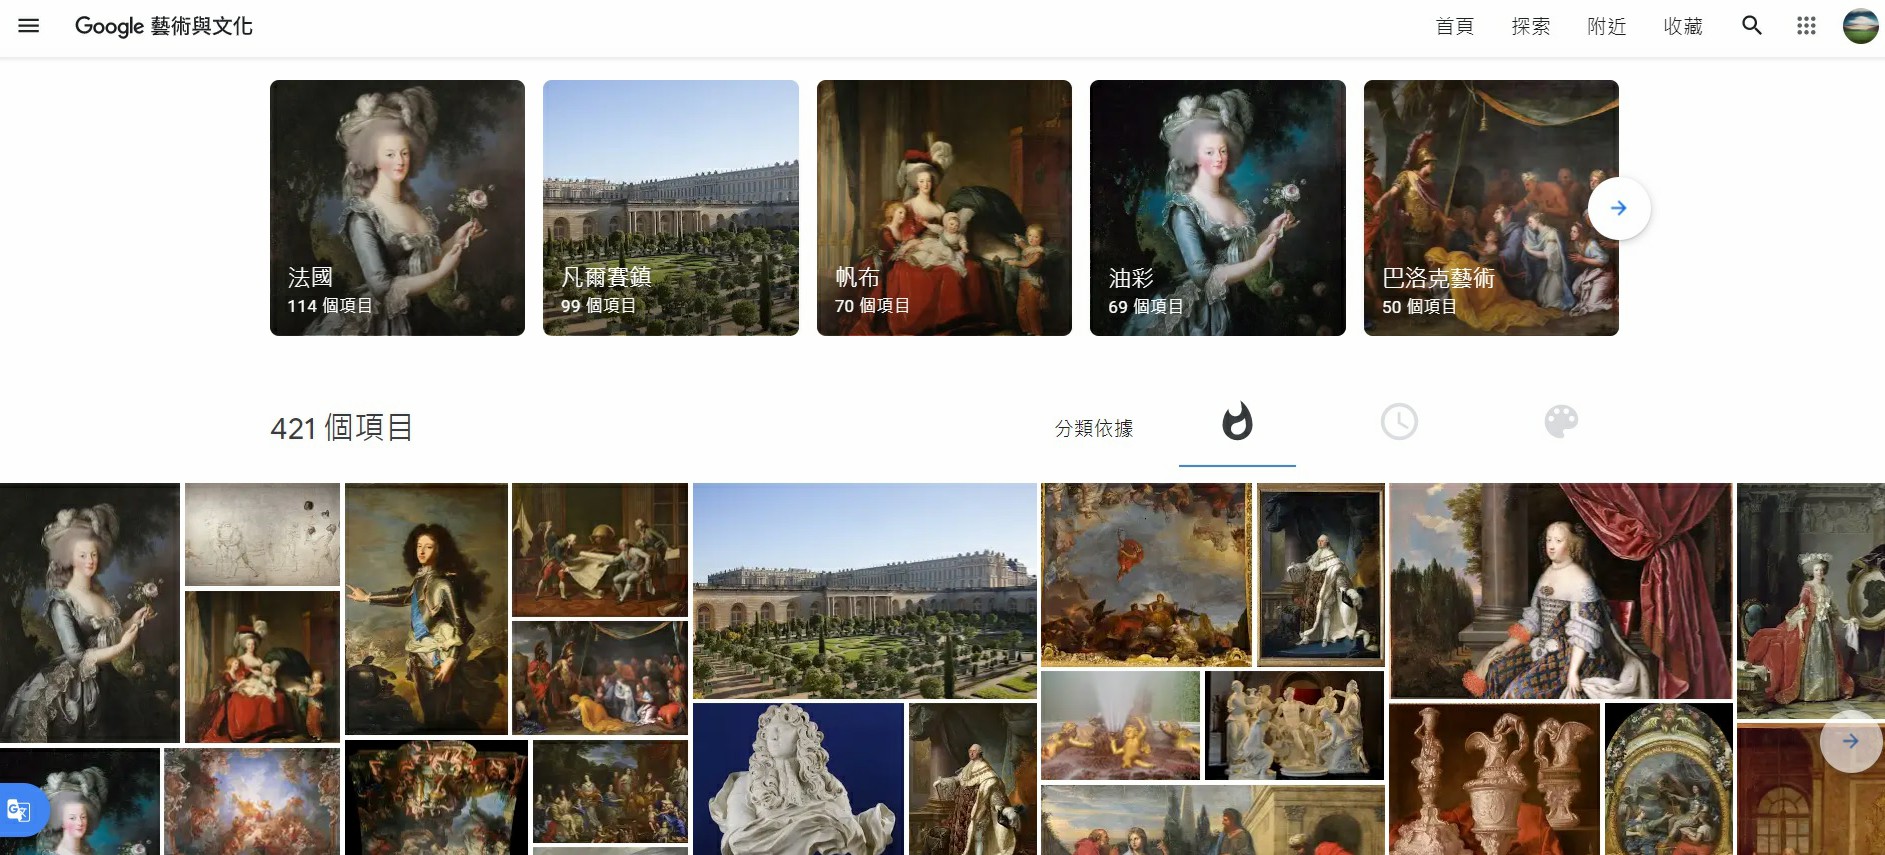 法國巴黎凡爾賽宮,凡爾賽宮, 鏡廳,柱之森,凡爾賽宮花園,Water Pathway,Google Arts & Culture,Google 藝術與文化,虛擬實境美術館,線上展覽